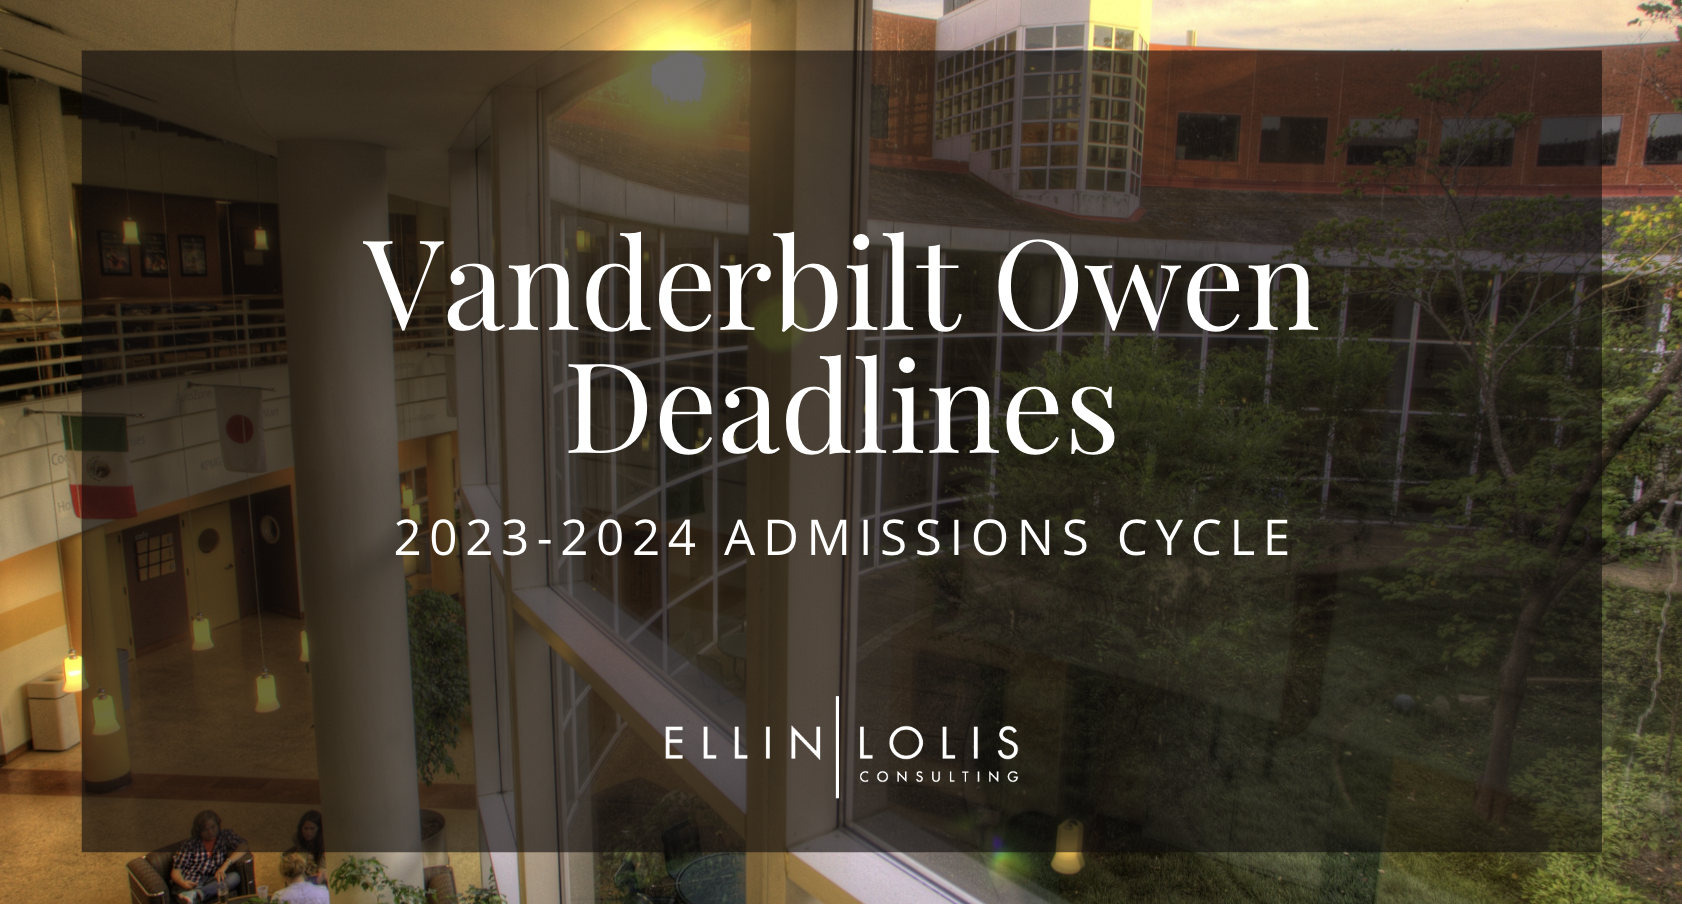 Vanderbilt Owen MBA Deadlines for 2023-2024